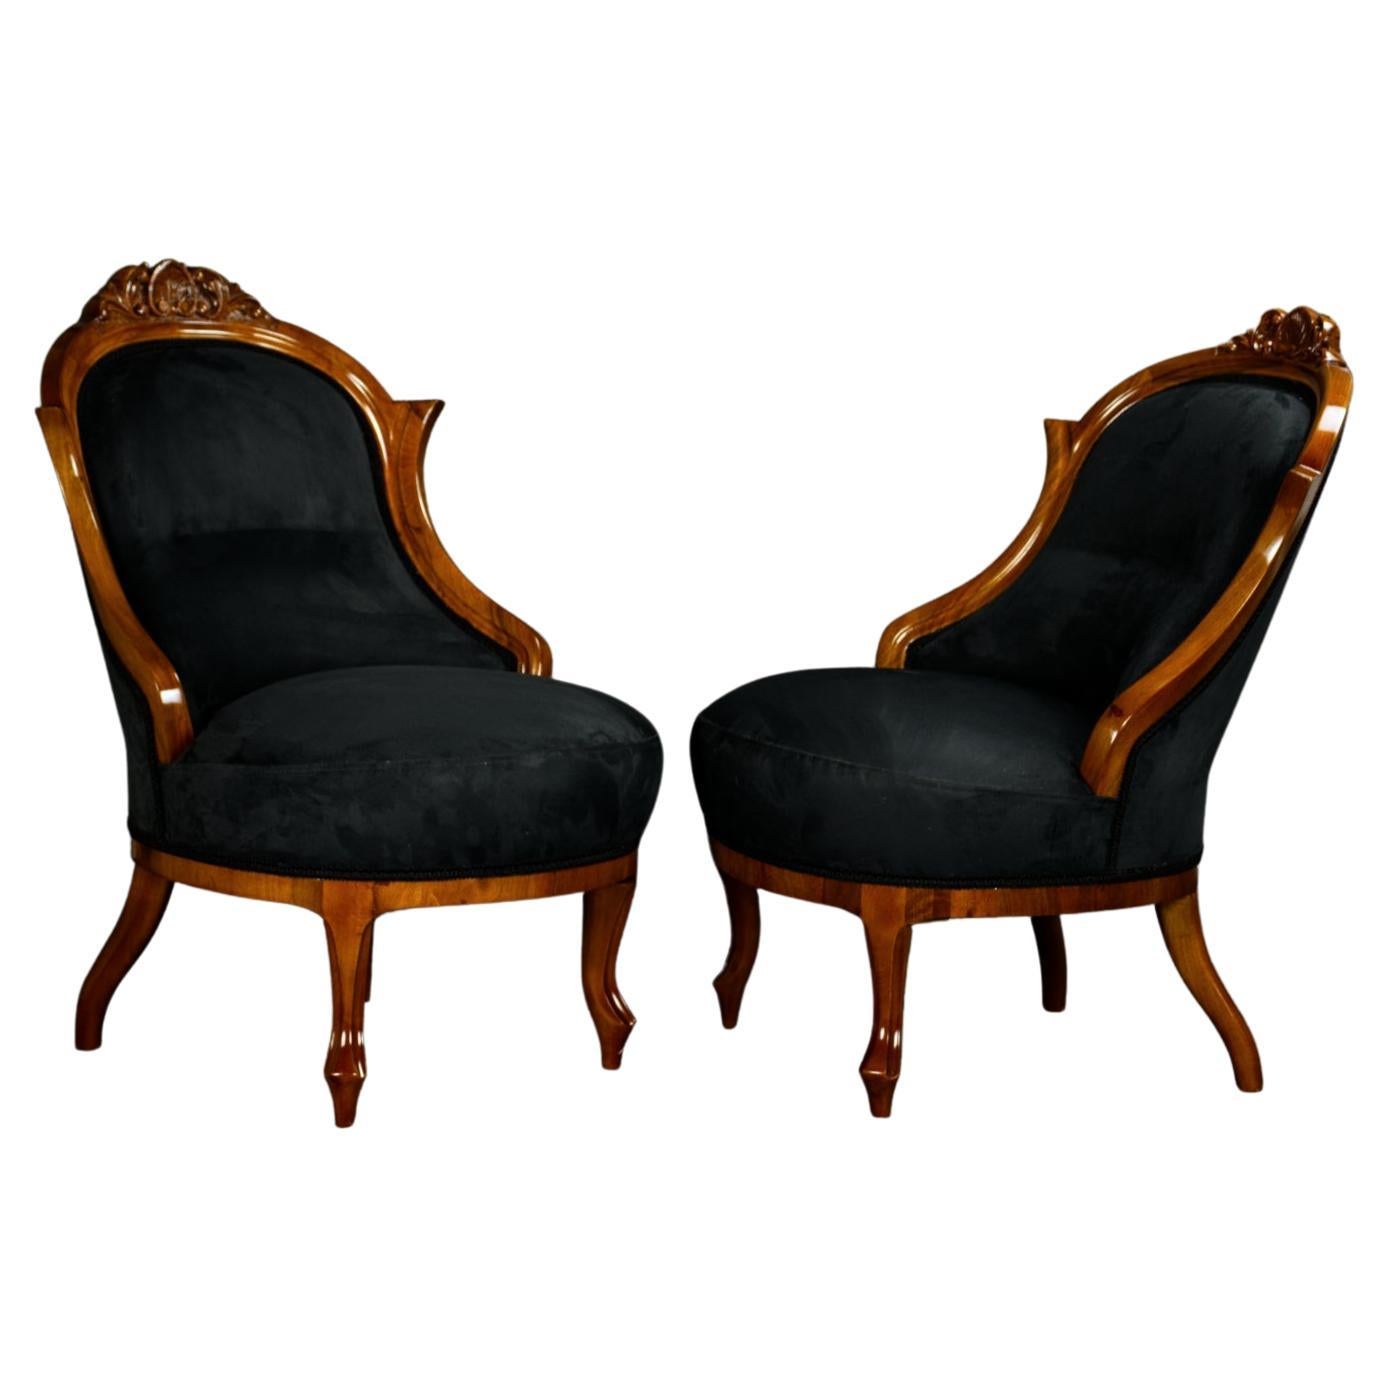 Vollständig restauriertes Paar schwarzer Biedermeier-Sessel, 19. Jahrhundert